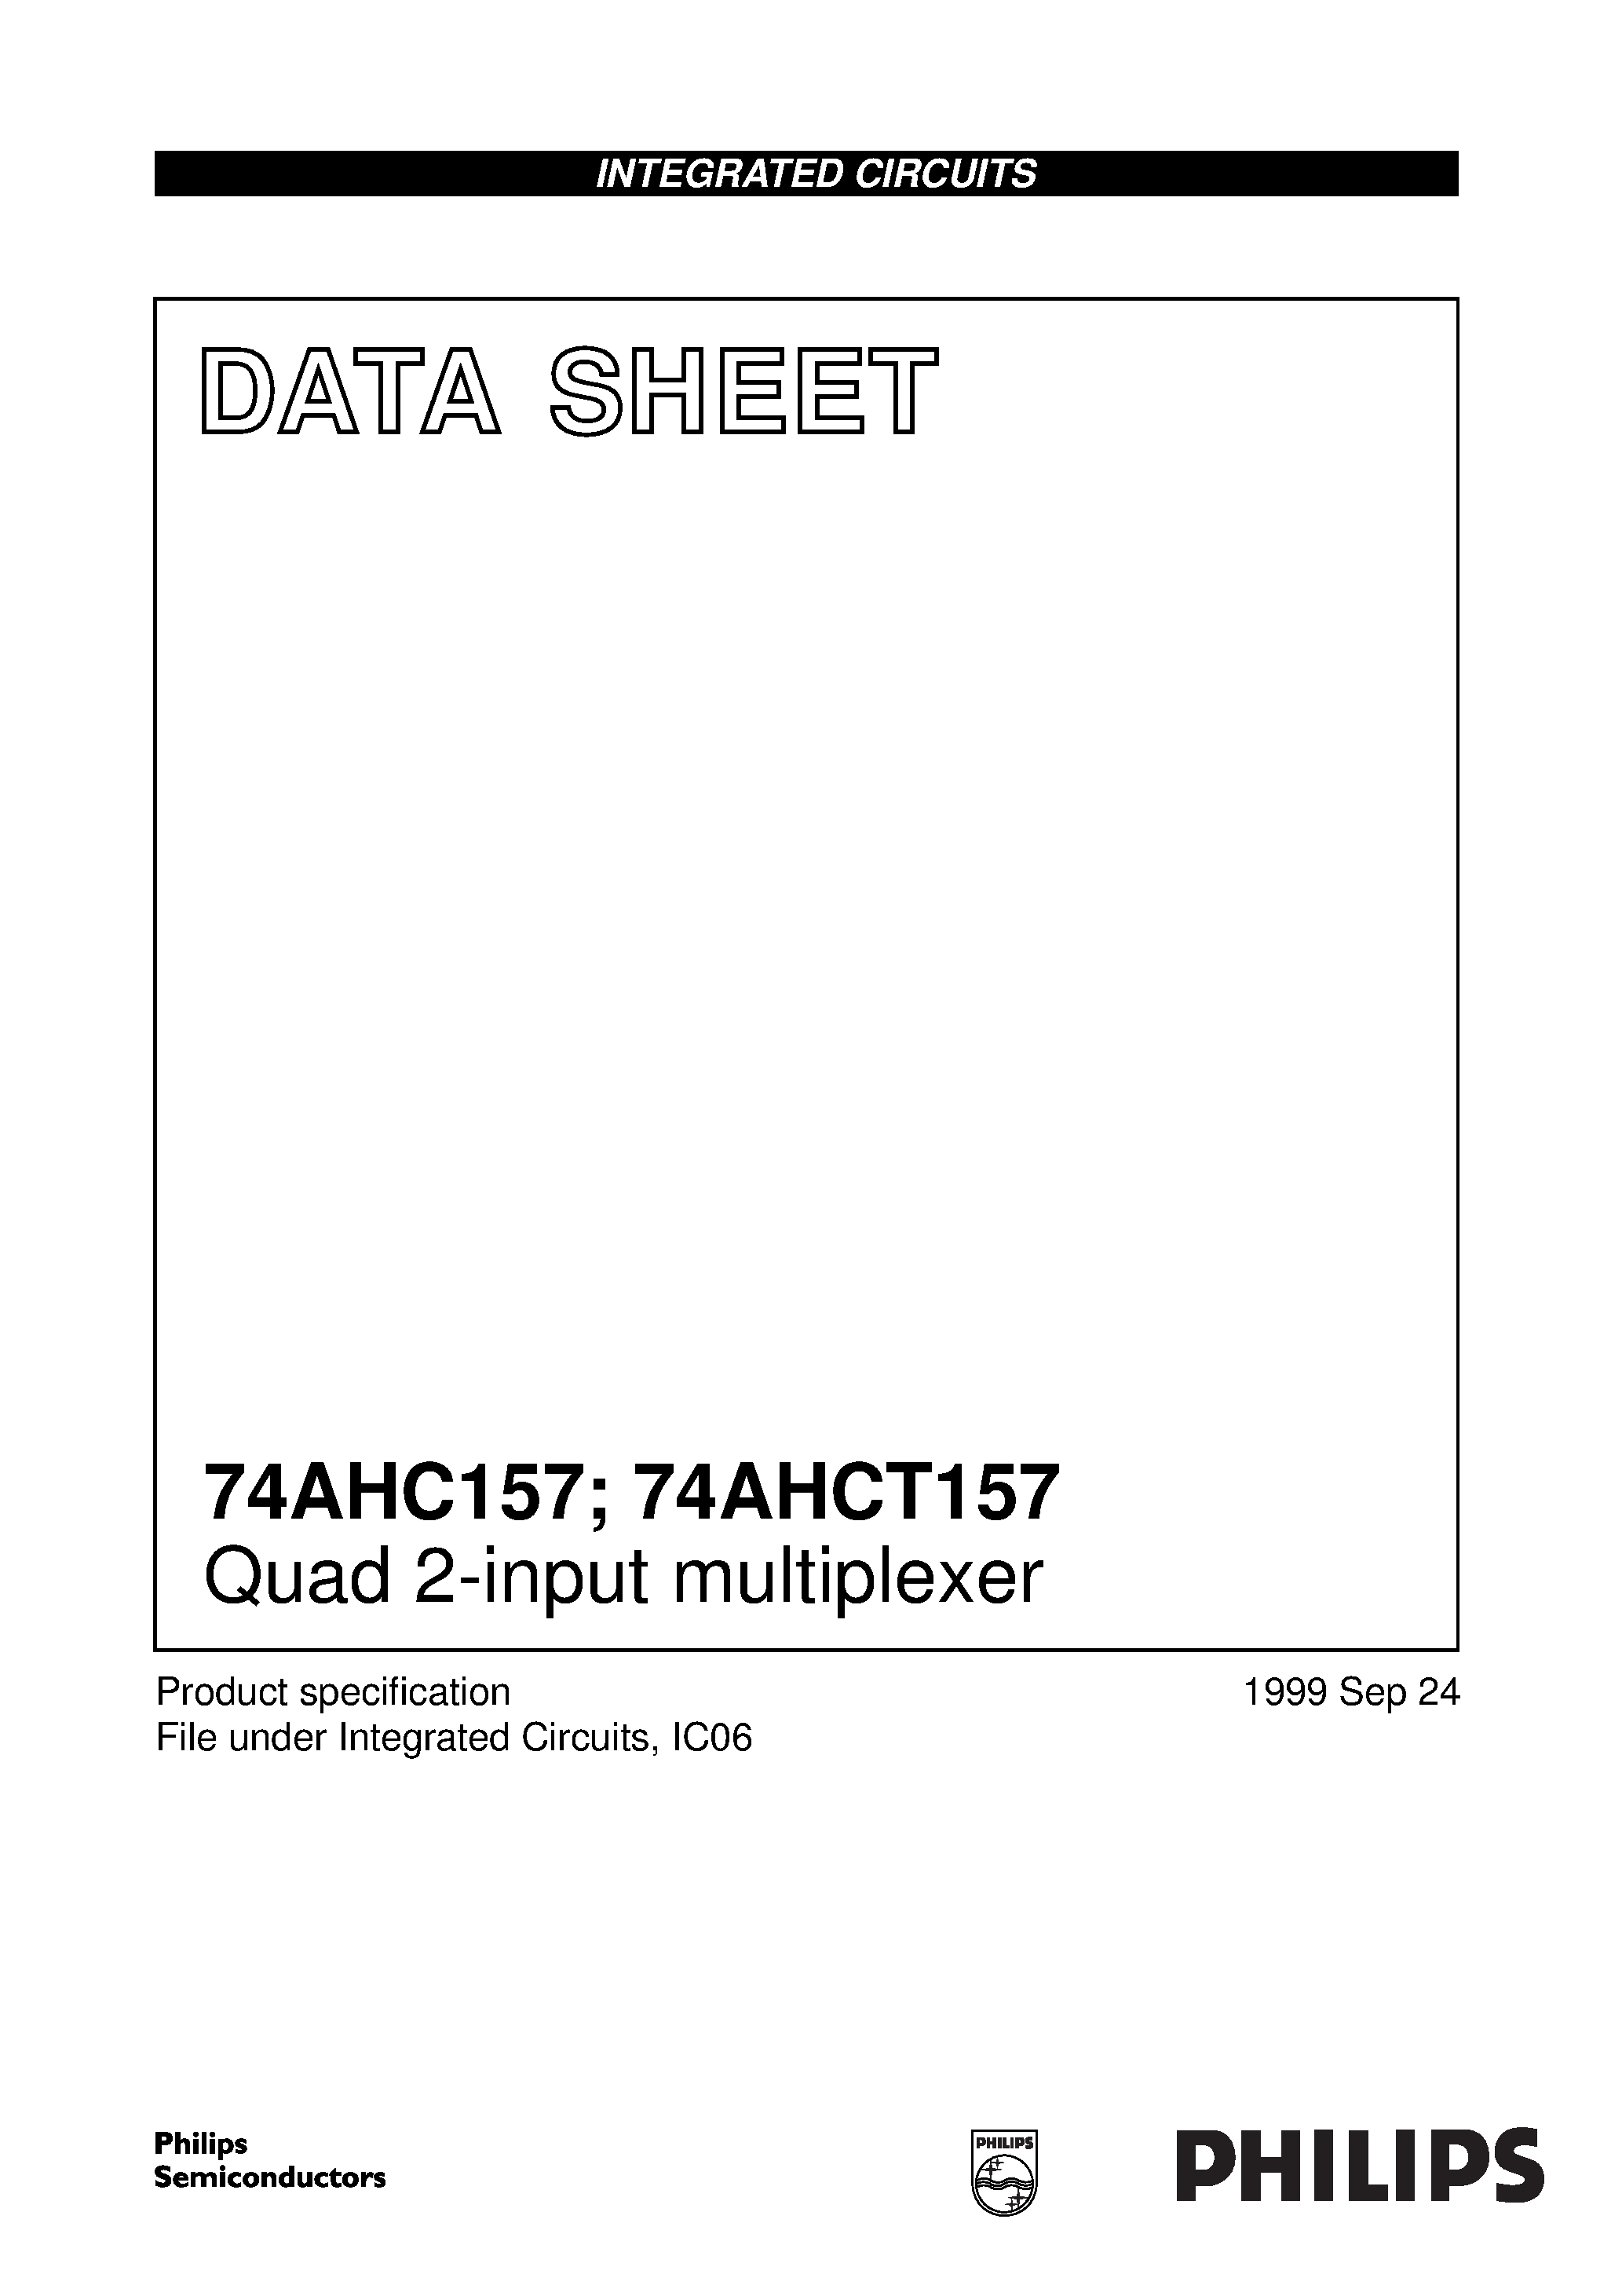 Даташит 74AHC157 - Quad 2-input multiplexer страница 1